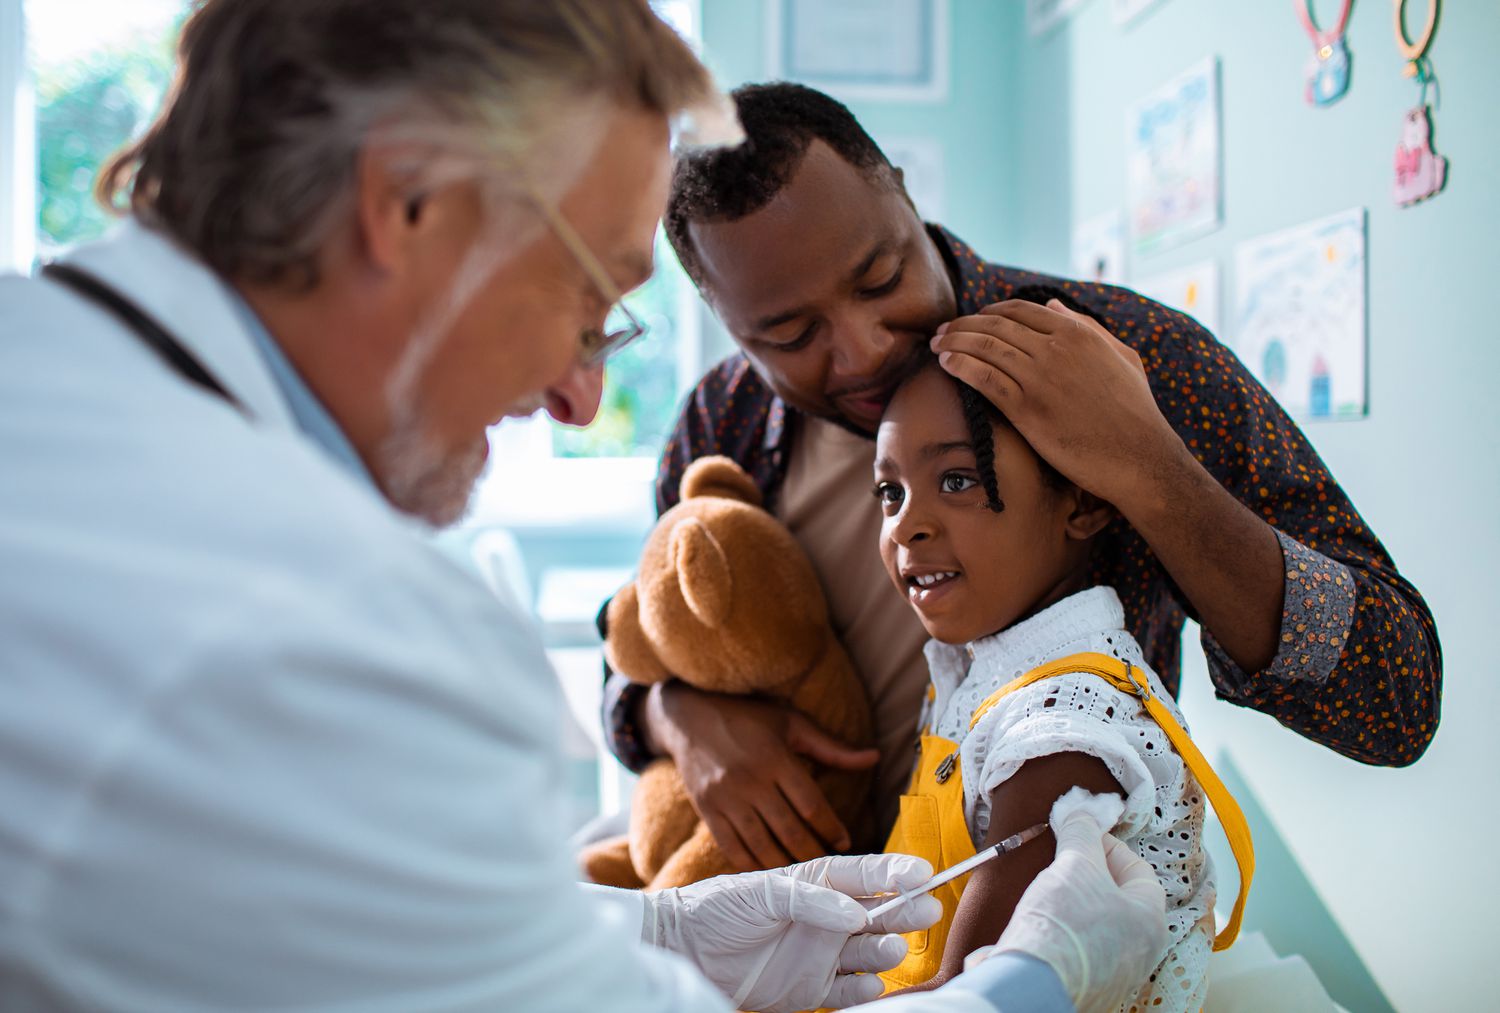 La vacuna COVID-19 y los niños: Lo que los padres deben saber